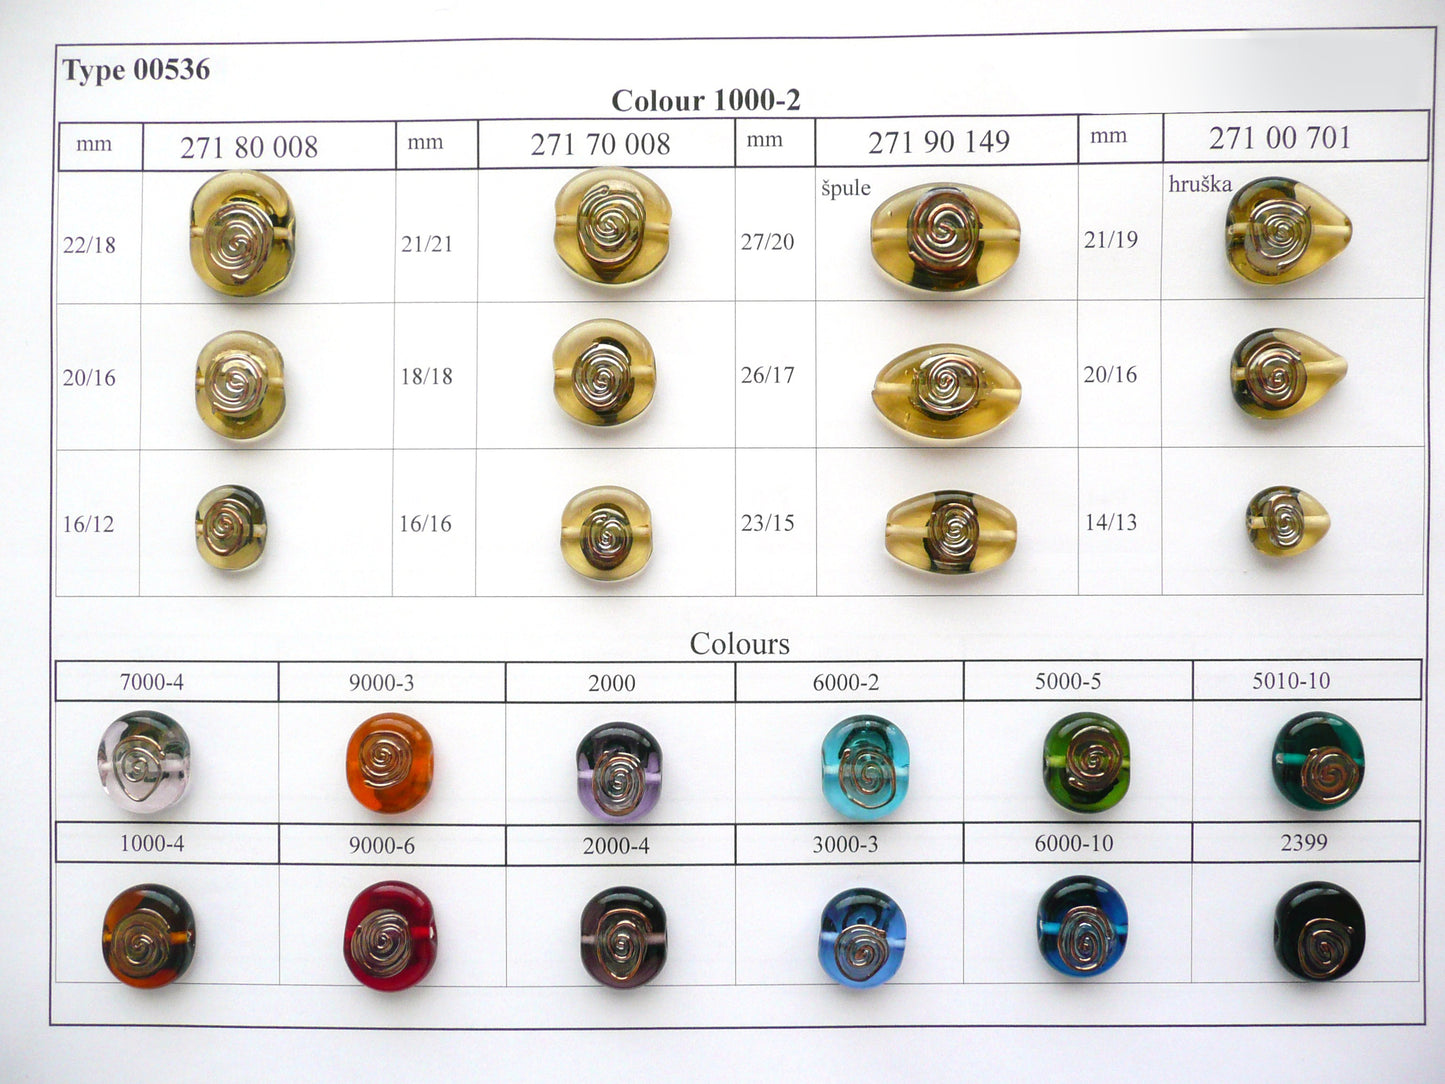 30 颗灯珠 536 / 扁平椭圆形 (271-90-149)，手工制作，宝仕奥莎玻璃，捷克共和国